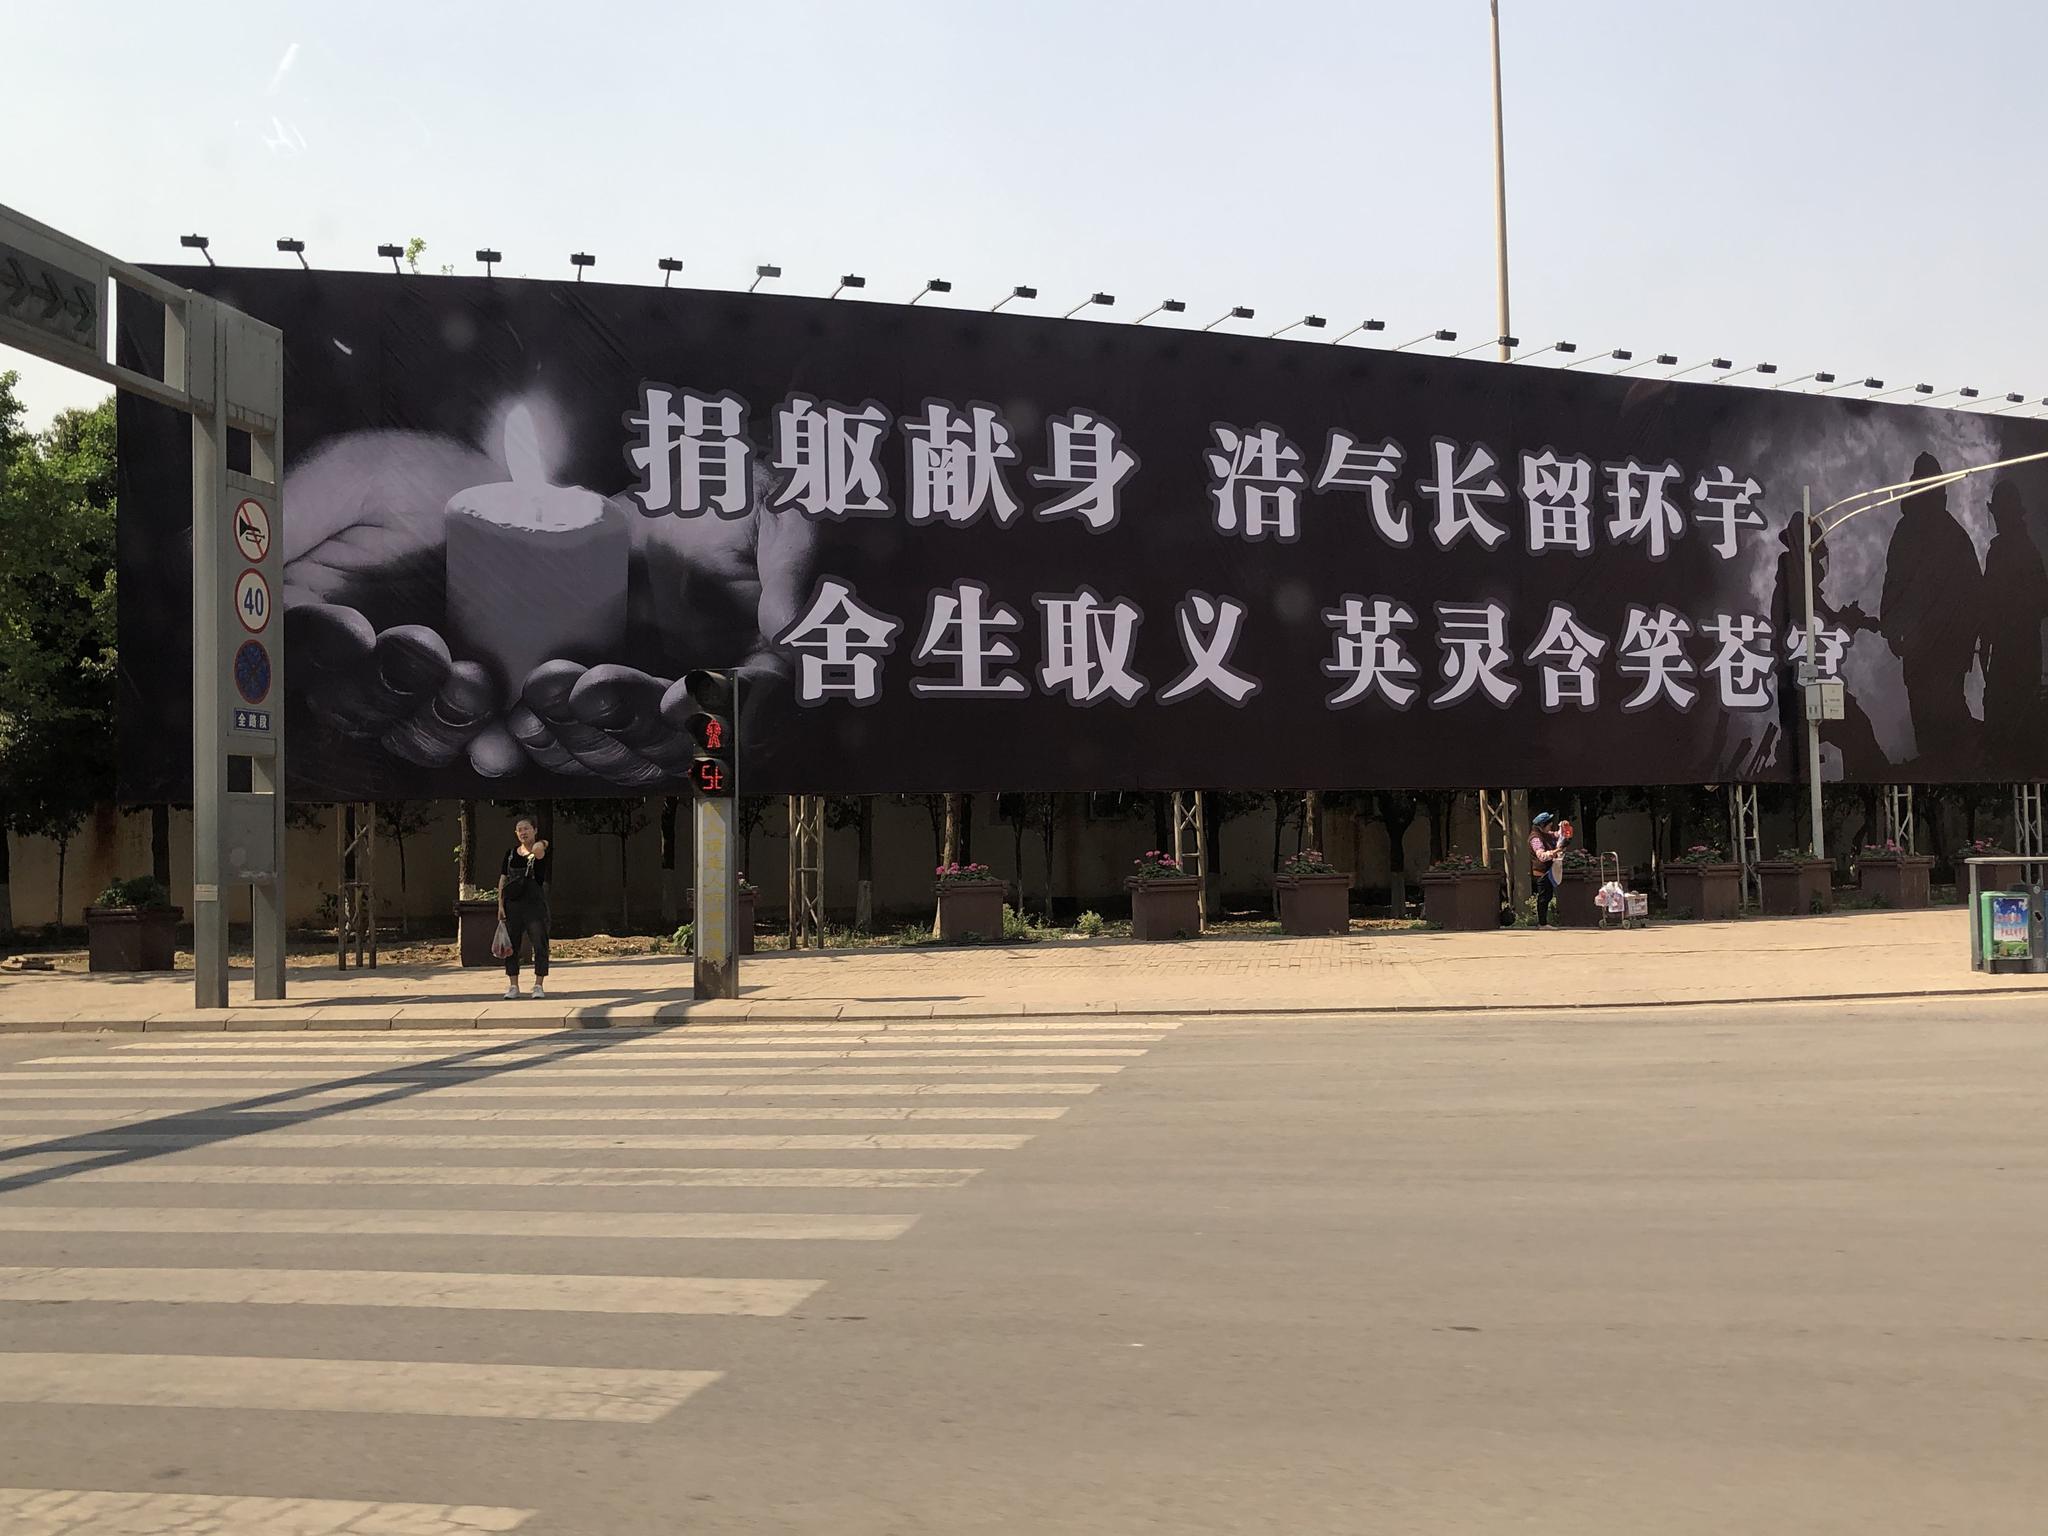 宁南县街道上布置着悼念英雄的展板。新京报记者王翀鹏程 摄